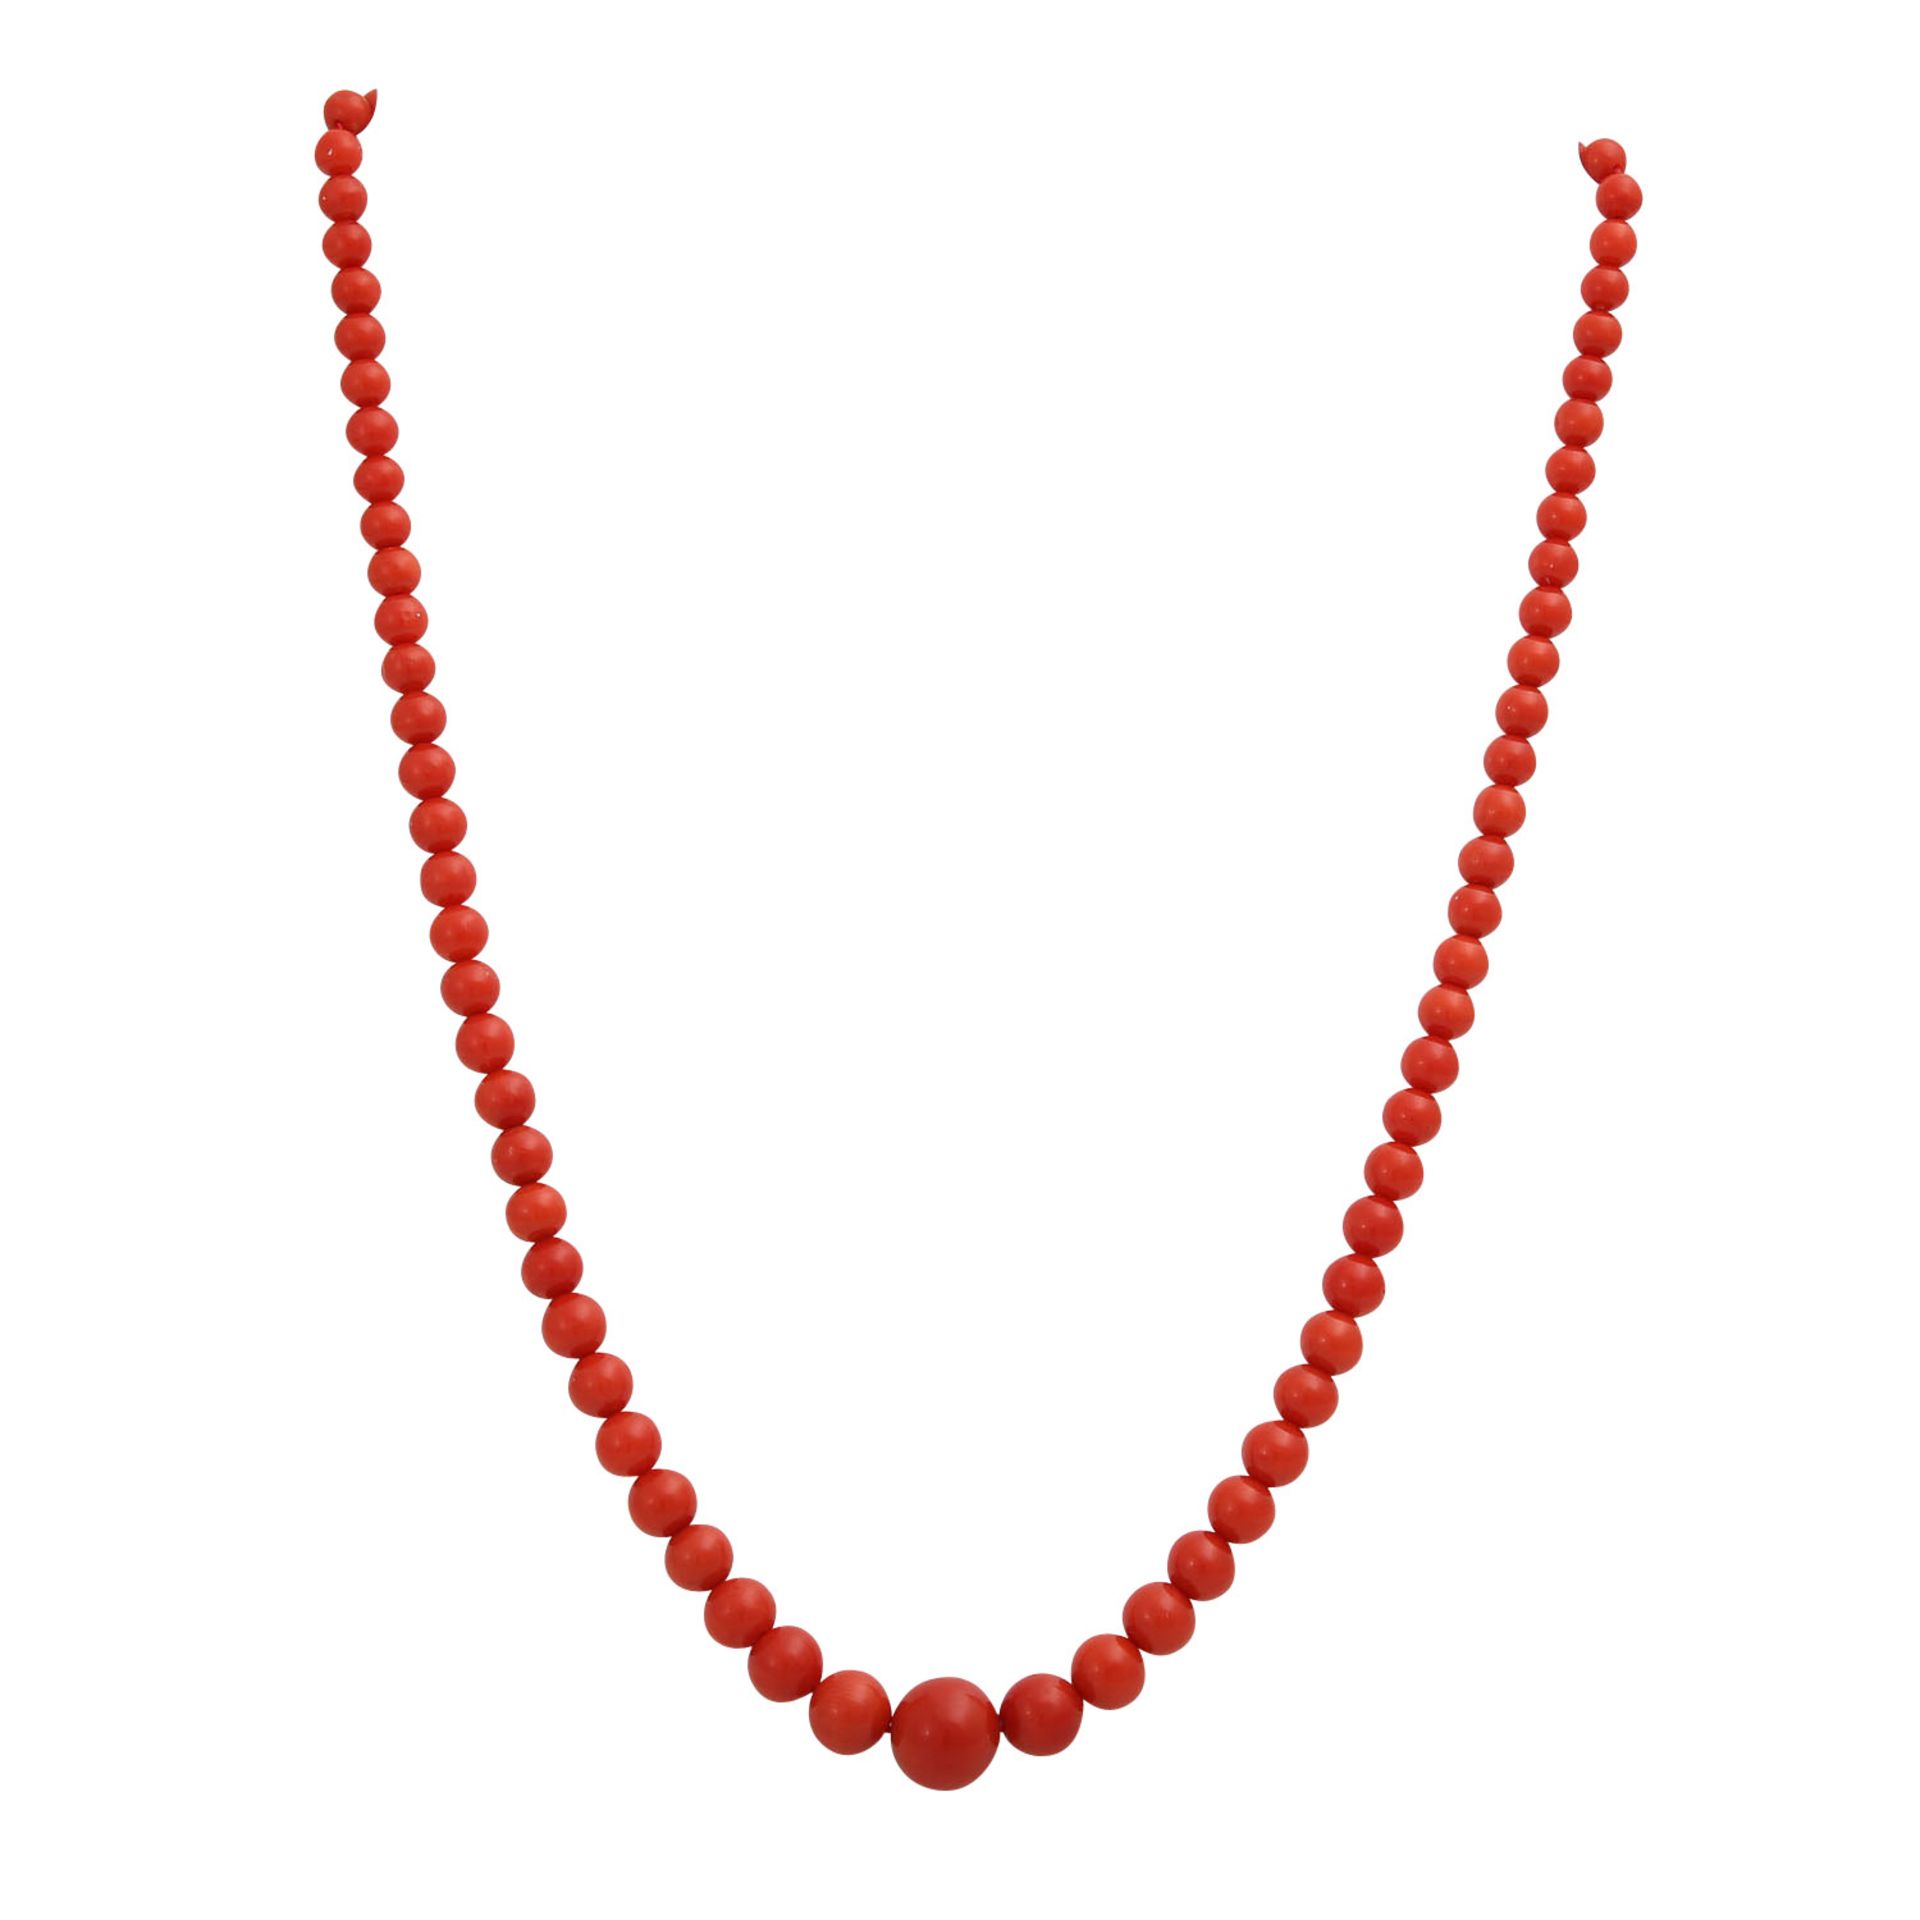 Collier aus Korallenkugelnin kräftigem Rot, im Verlauf ca. 4-10 mm, vergoldeter Federring. L: ca. 49